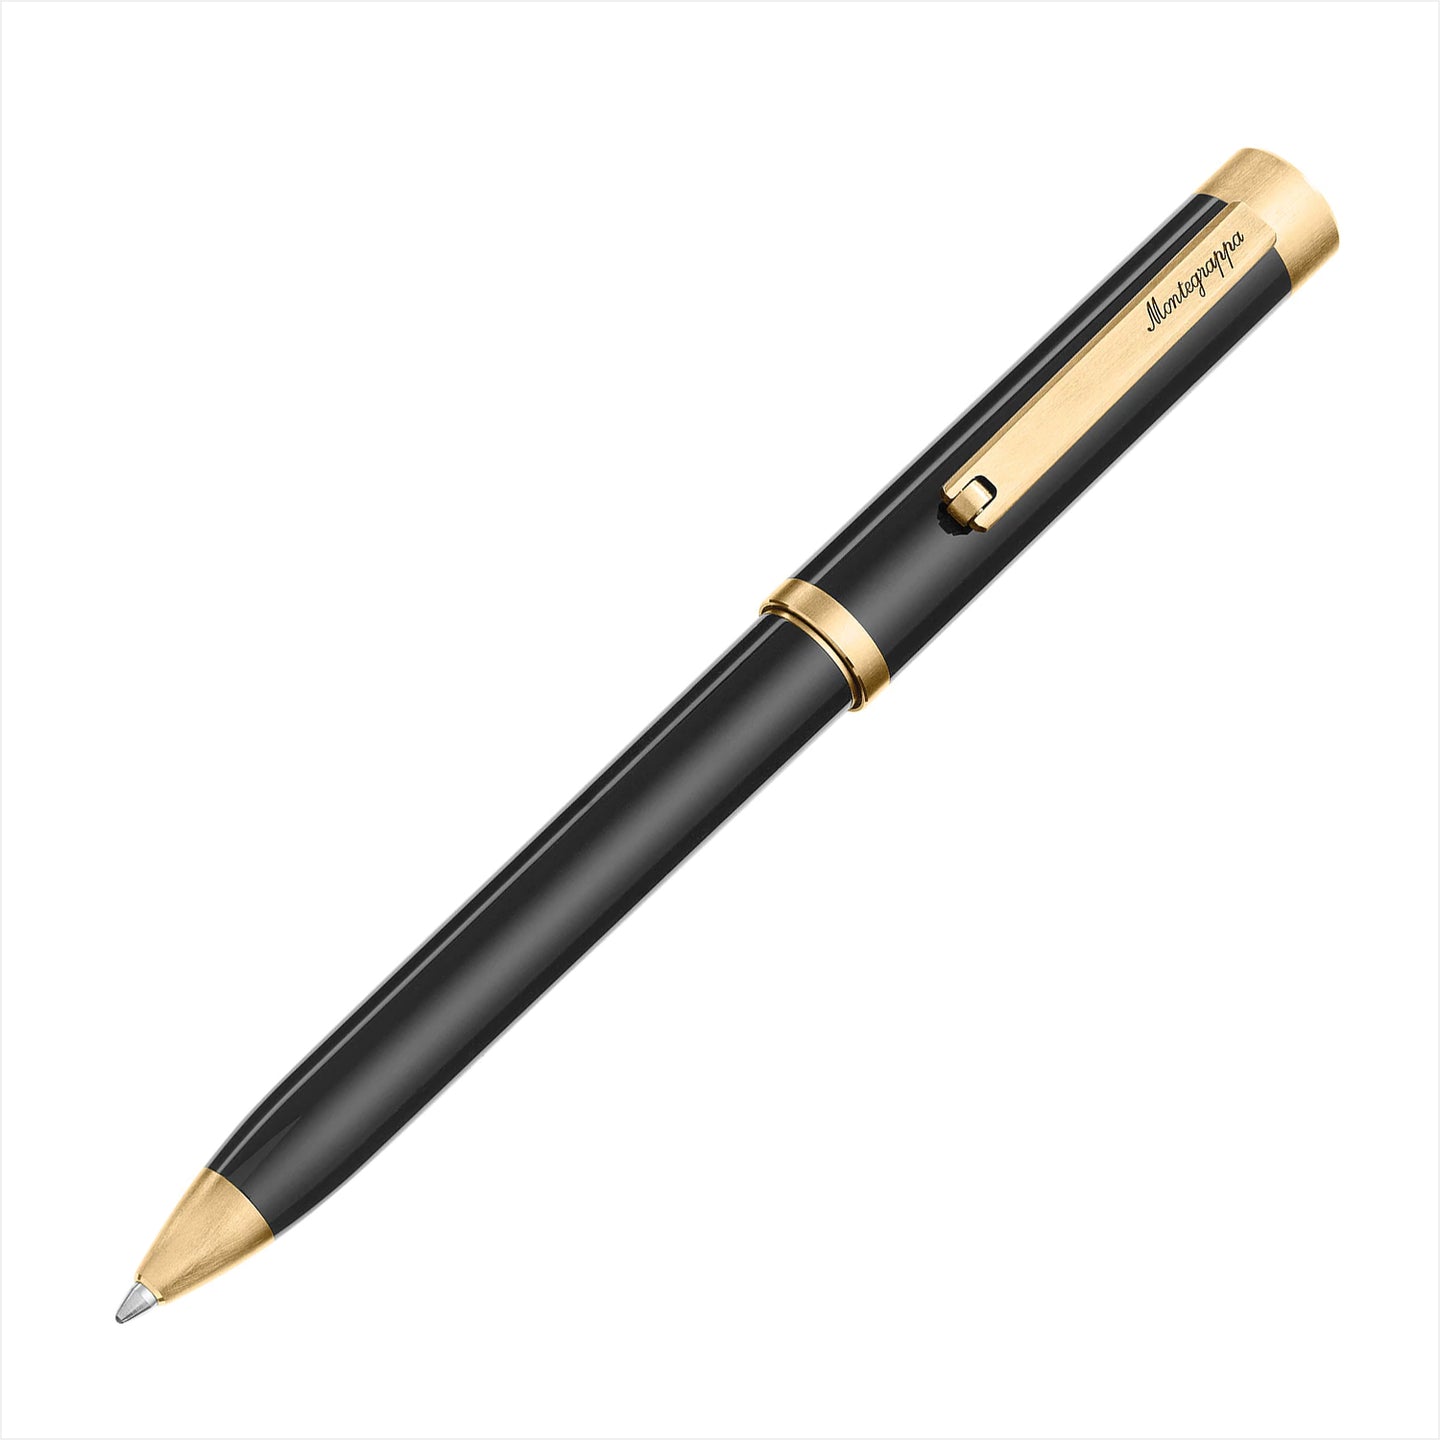 Der Montegrappa ZERO Gold Kugelschreiber ist ein exklusives und edles Schreibgerät.